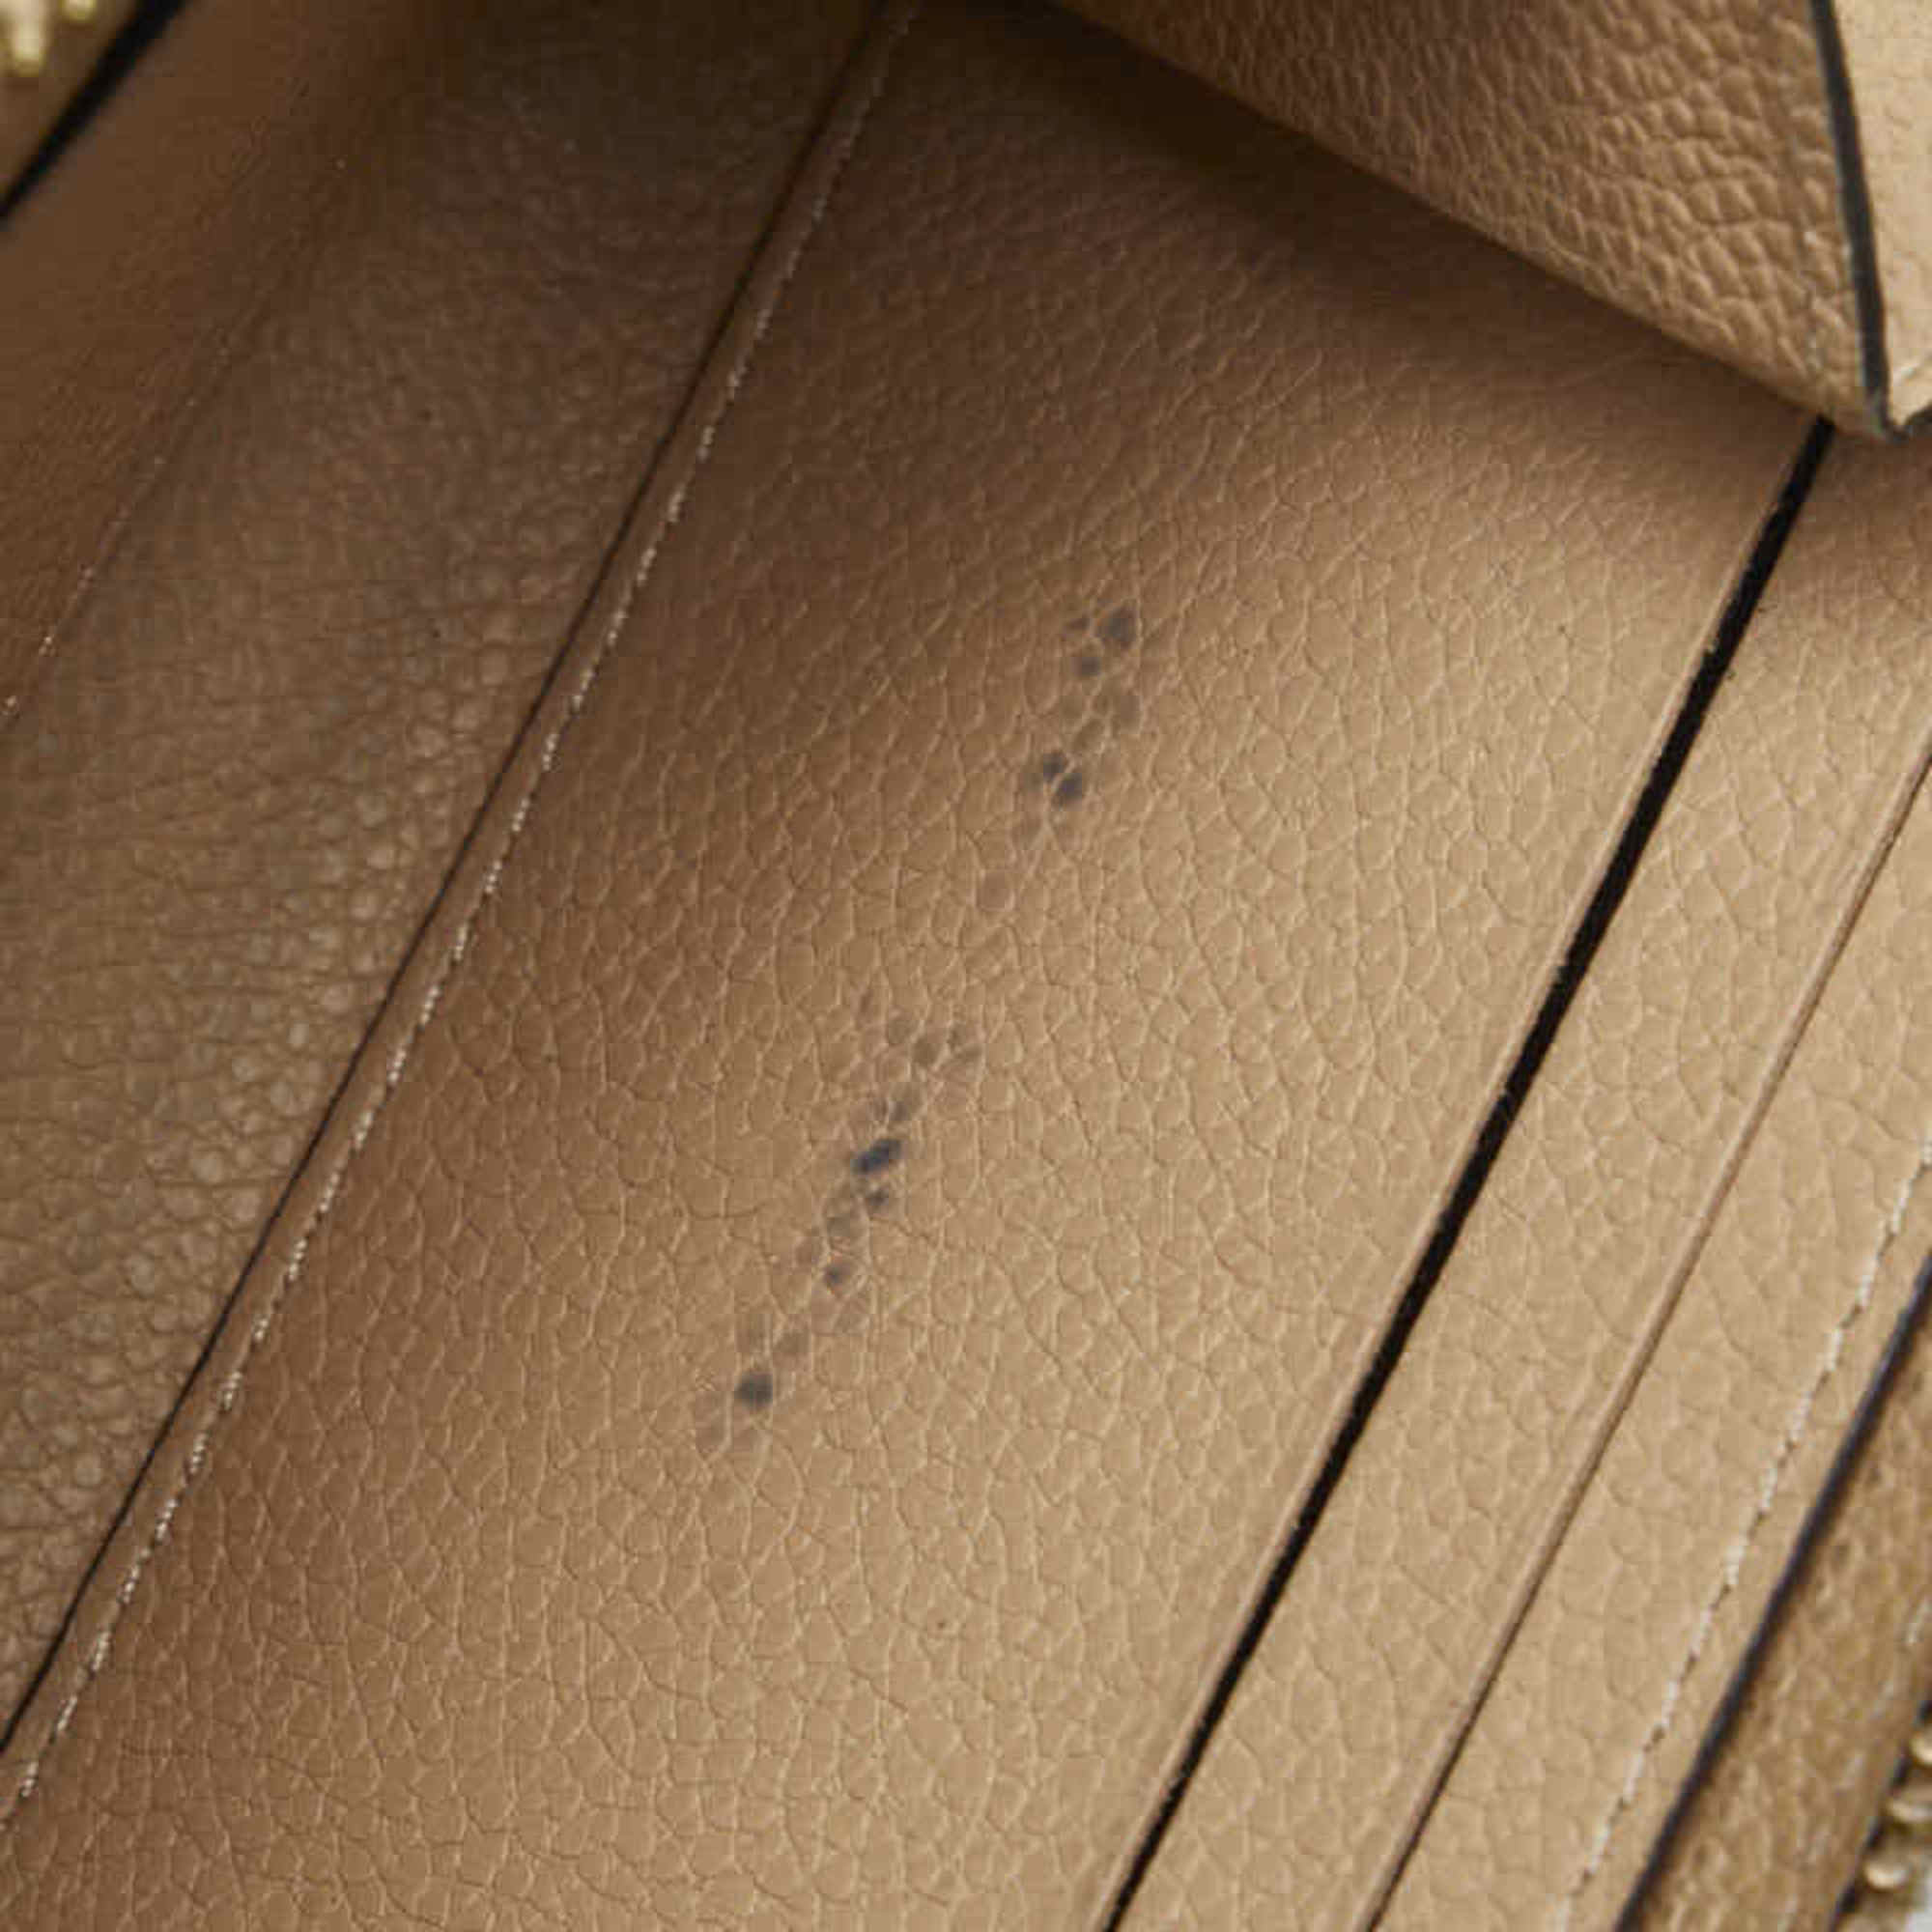 Louis Vuitton Monogram Empreinte Portefeuille Clemence Long Wallet M60173 Dune Beige Leather Women's LOUIS VUITTON